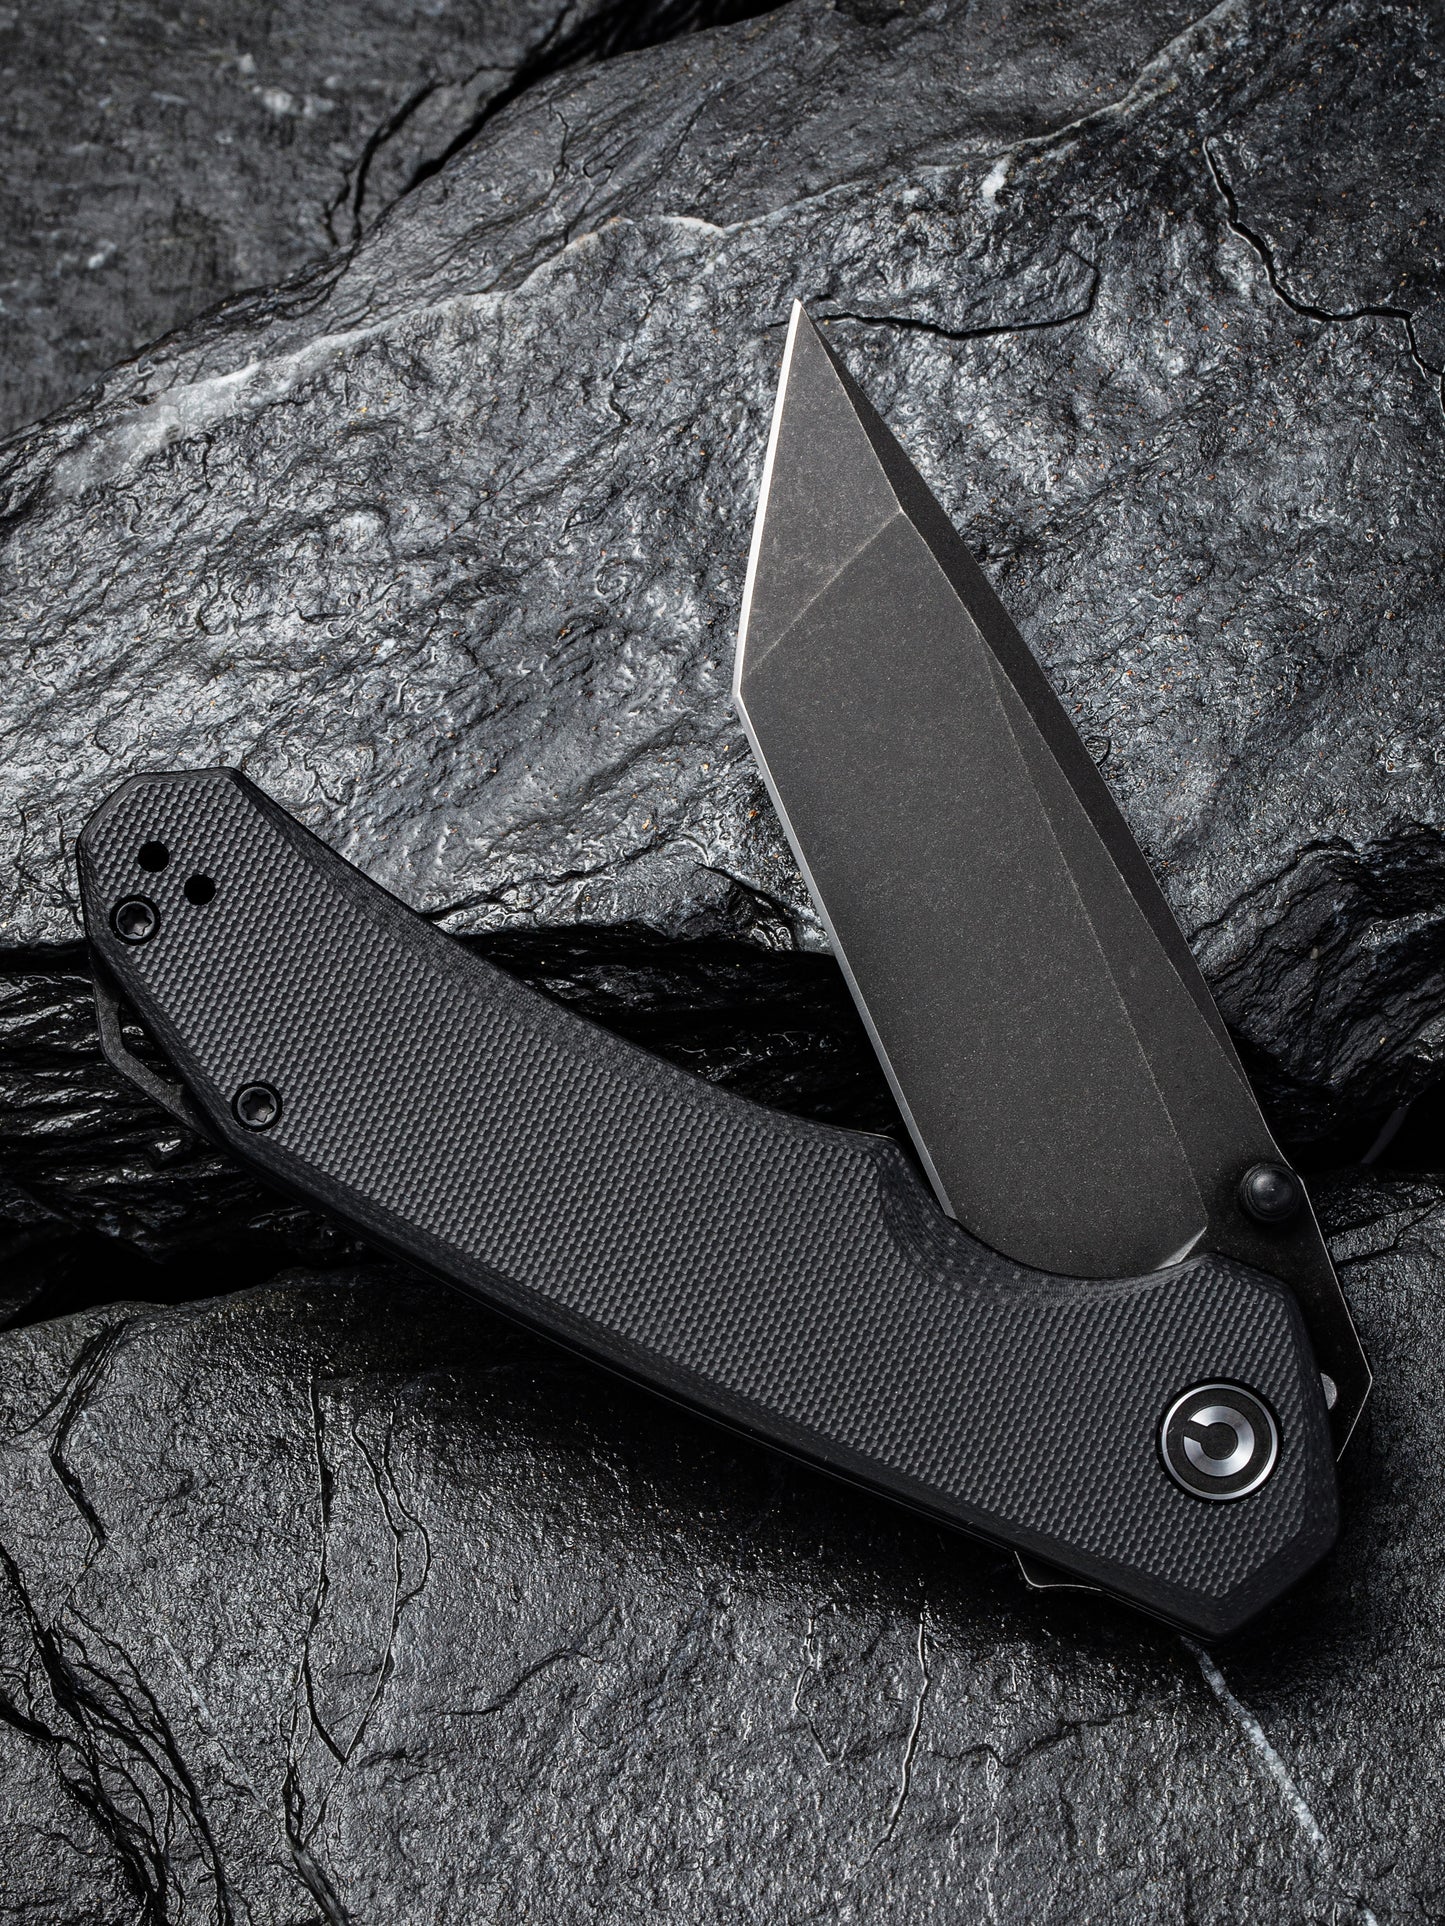 Civivi Brazen Tanto 3.46" D2 Black Stonewashed Black G10 Folding Knife C2023C